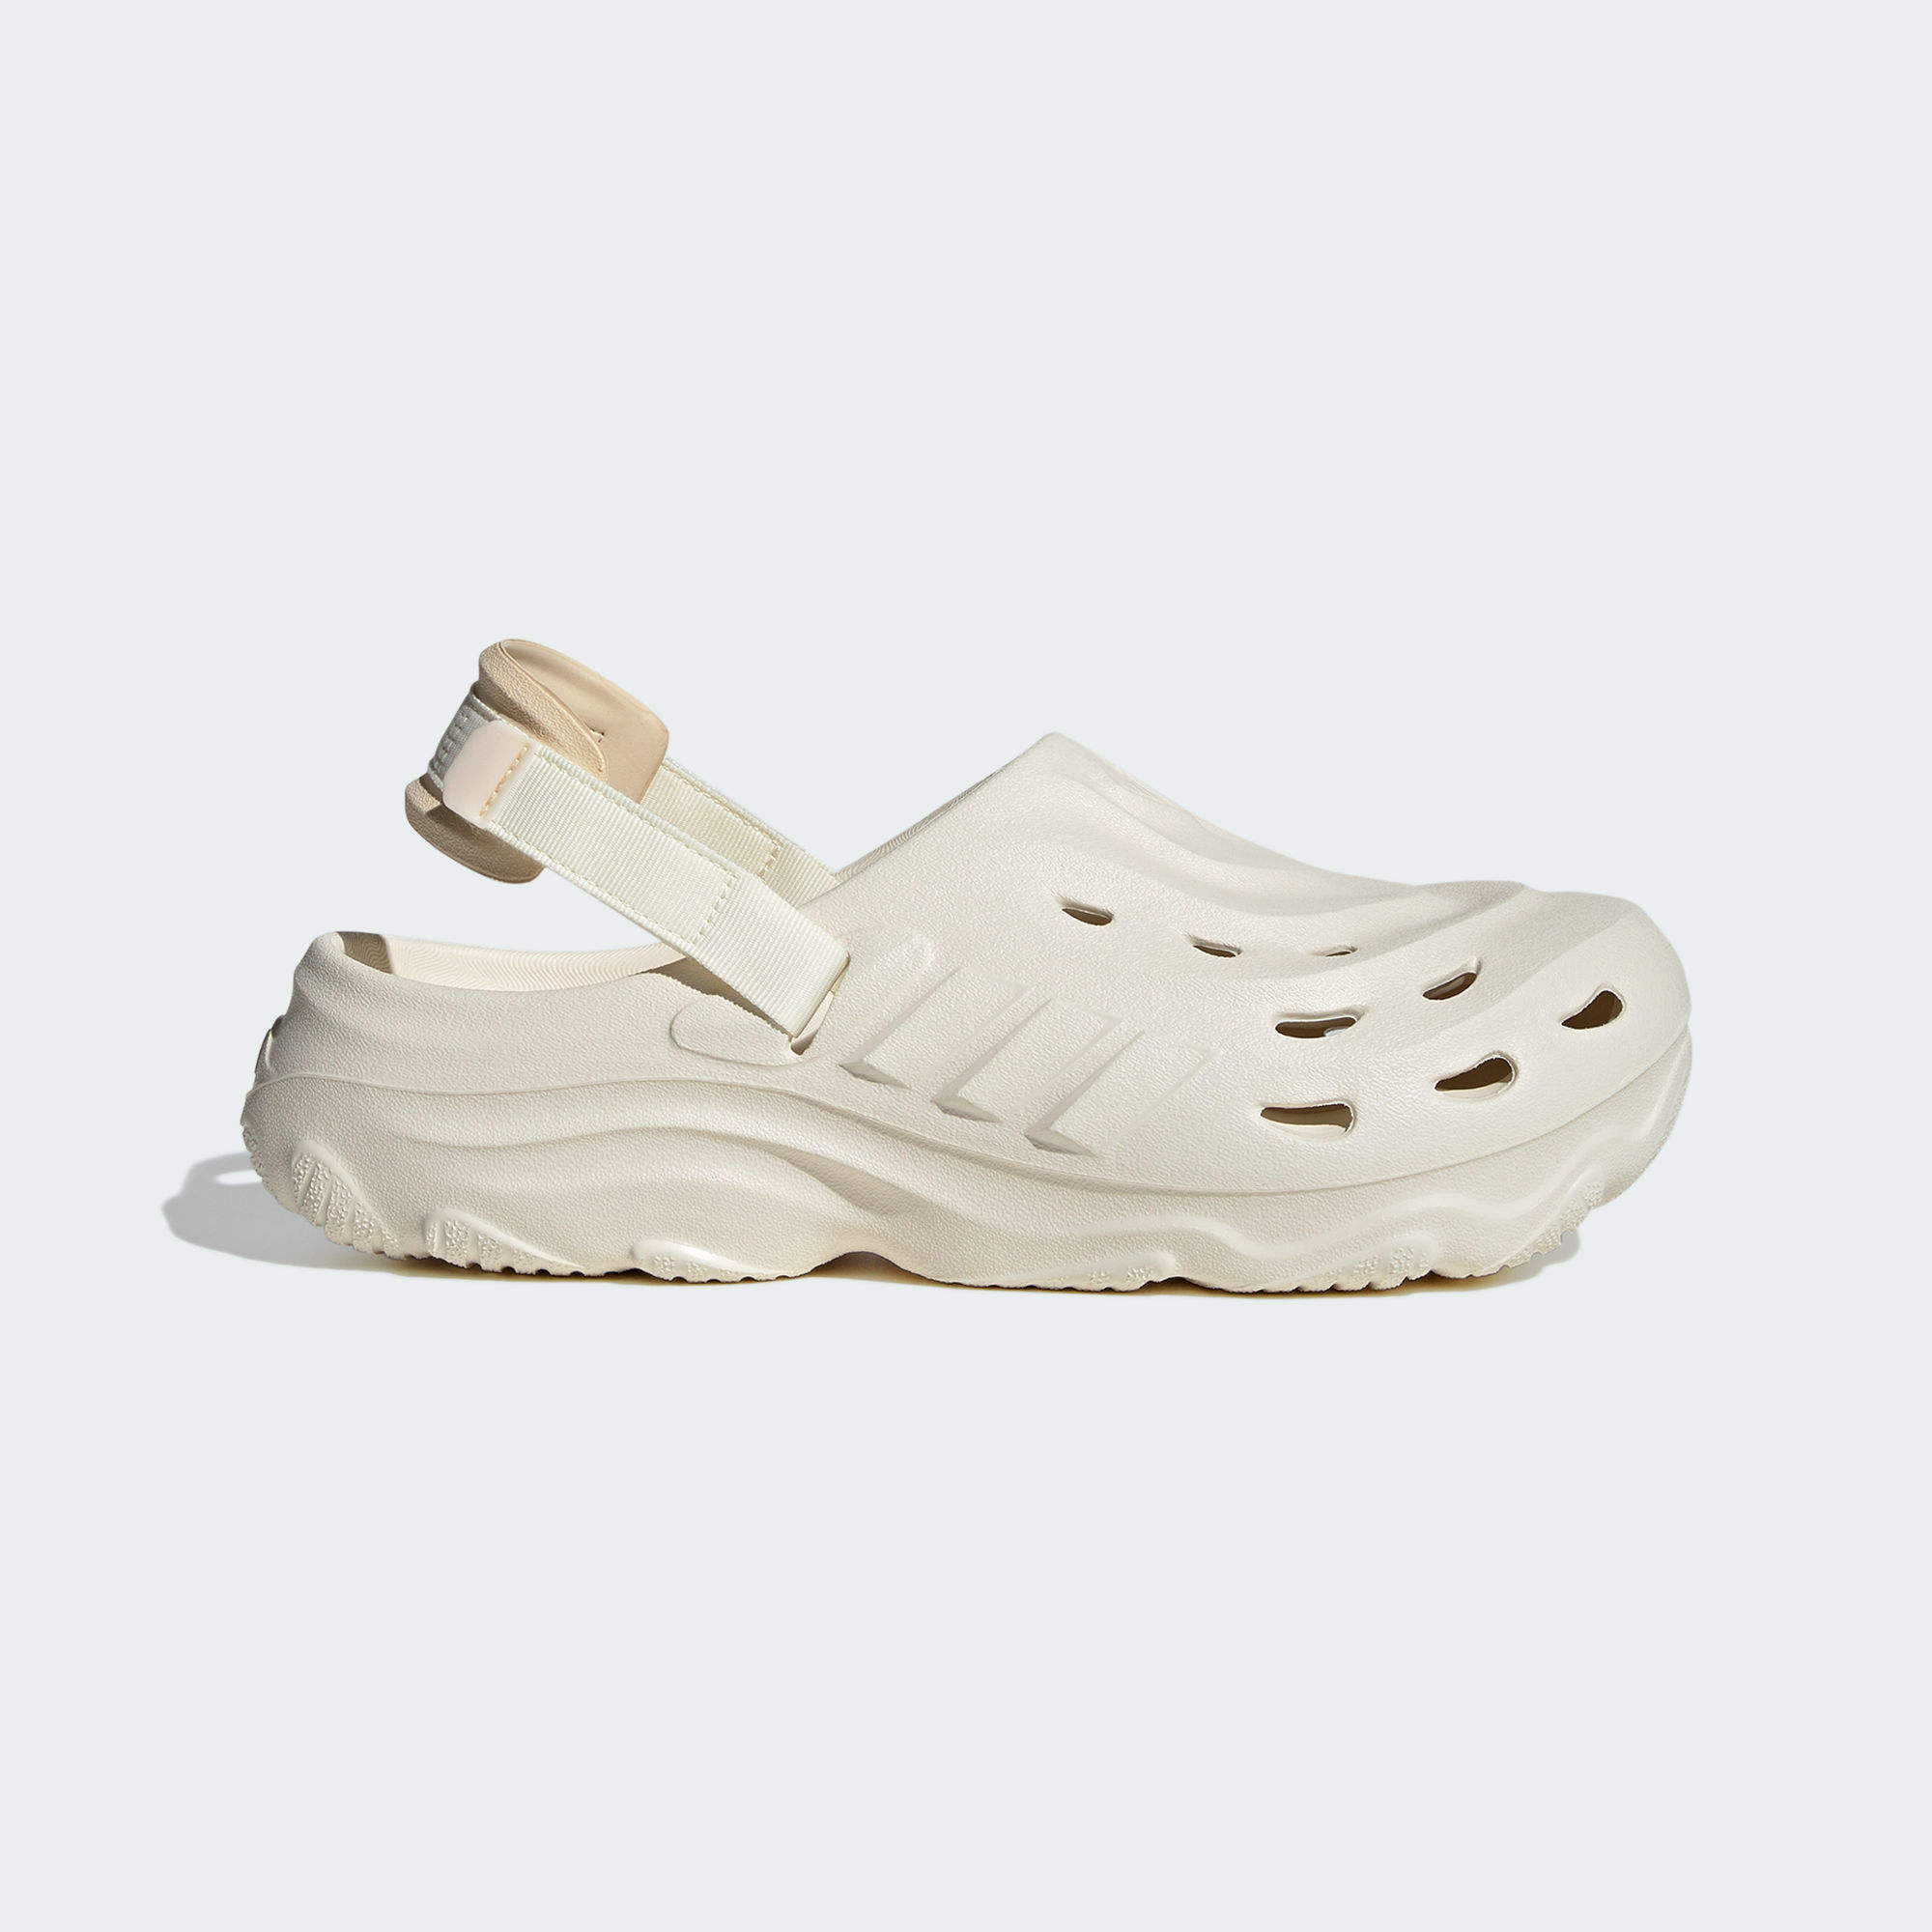 MAXXCLOG 運動鞋- 米色| 女子,男子| adidas(愛迪達)香港官方網上商店